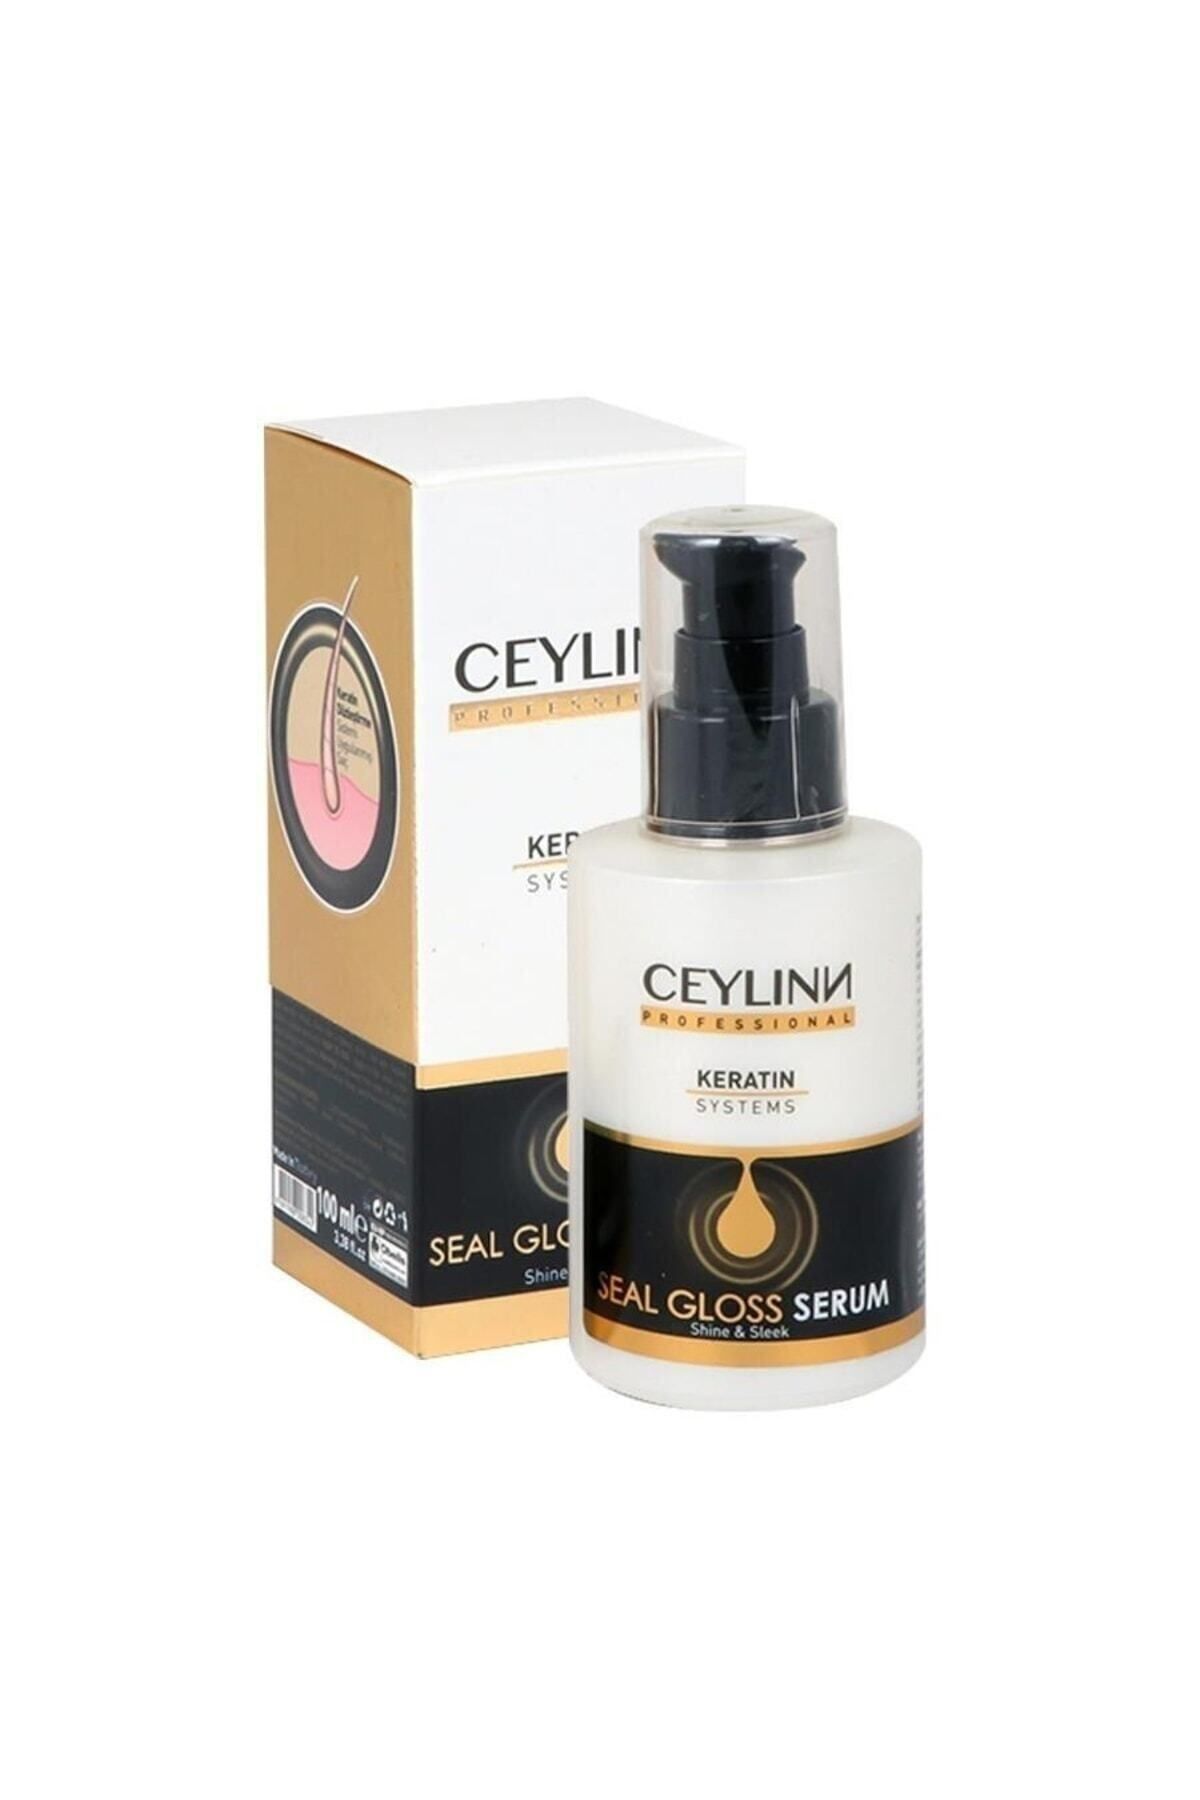 Ceylinn Keratin Sealing Revitalizing & Shine Hair Serum 100 Ml MehDem4